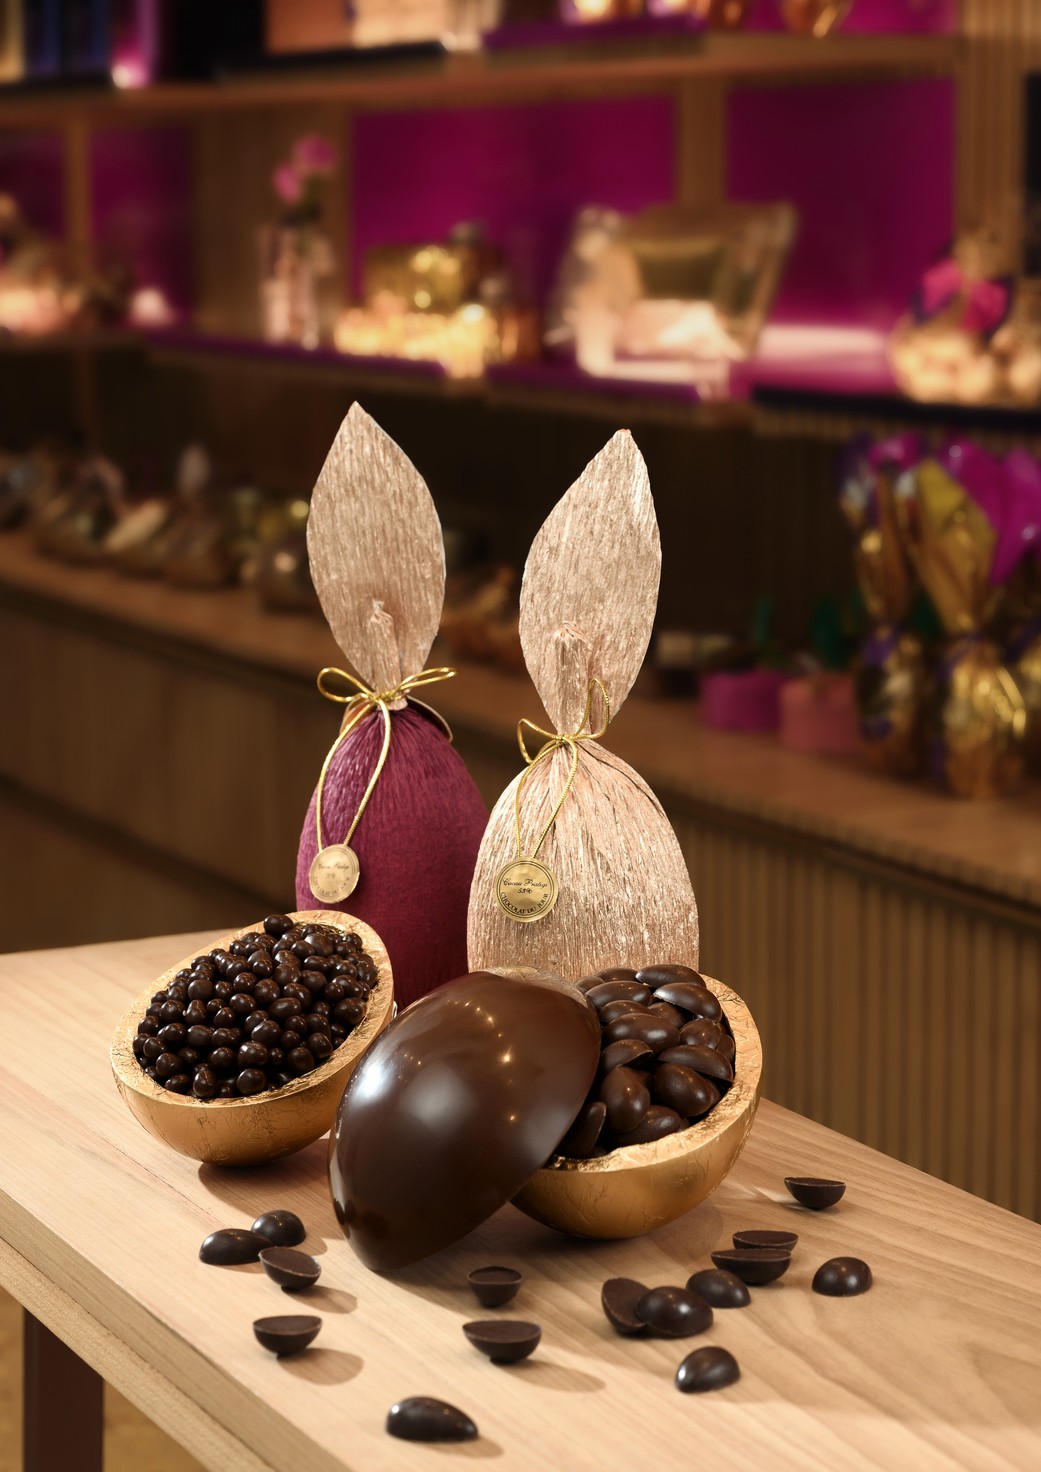 Chocolat du Jour | Ovo Choco Amandes, chocolate ao leite com amêndoas caramelizadas, recheado com as deliciosas choco amandes (400 g). R$ 344